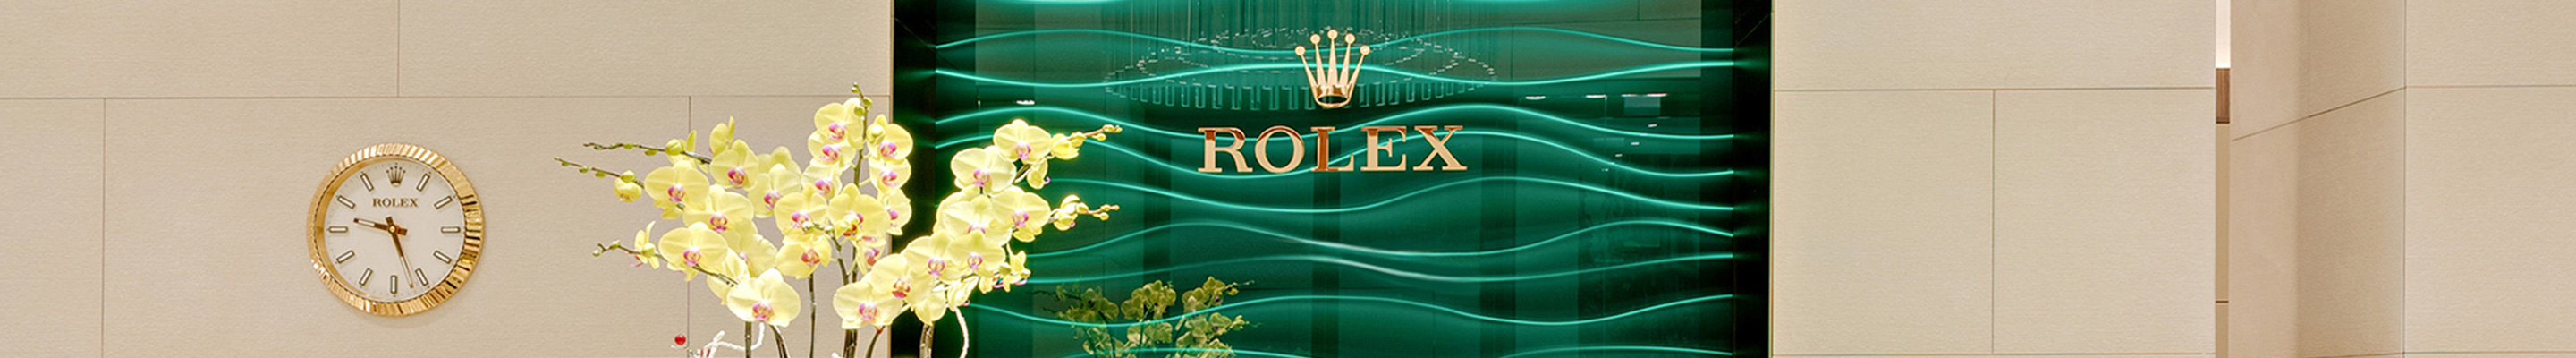 Rolex at Ah Riise Virgin Islands